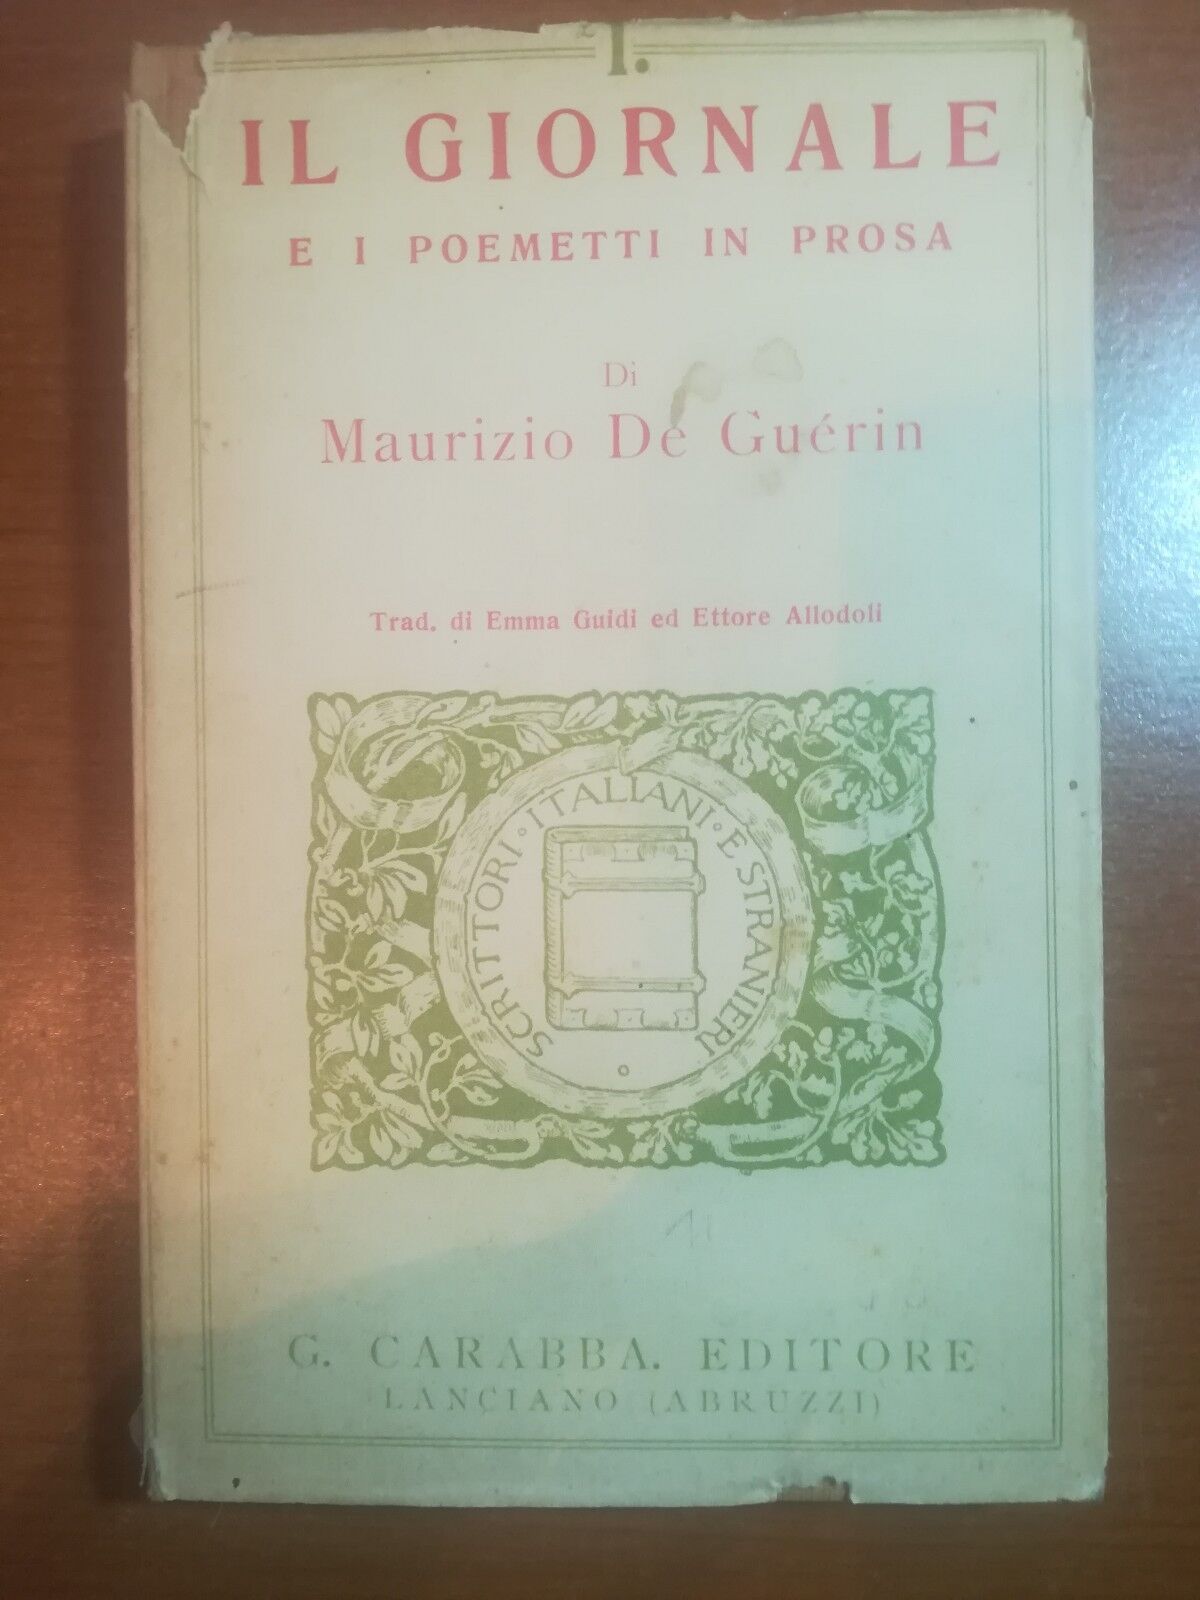 Il giornale - Maurizio De Guerin - Carabba - 1914 -M